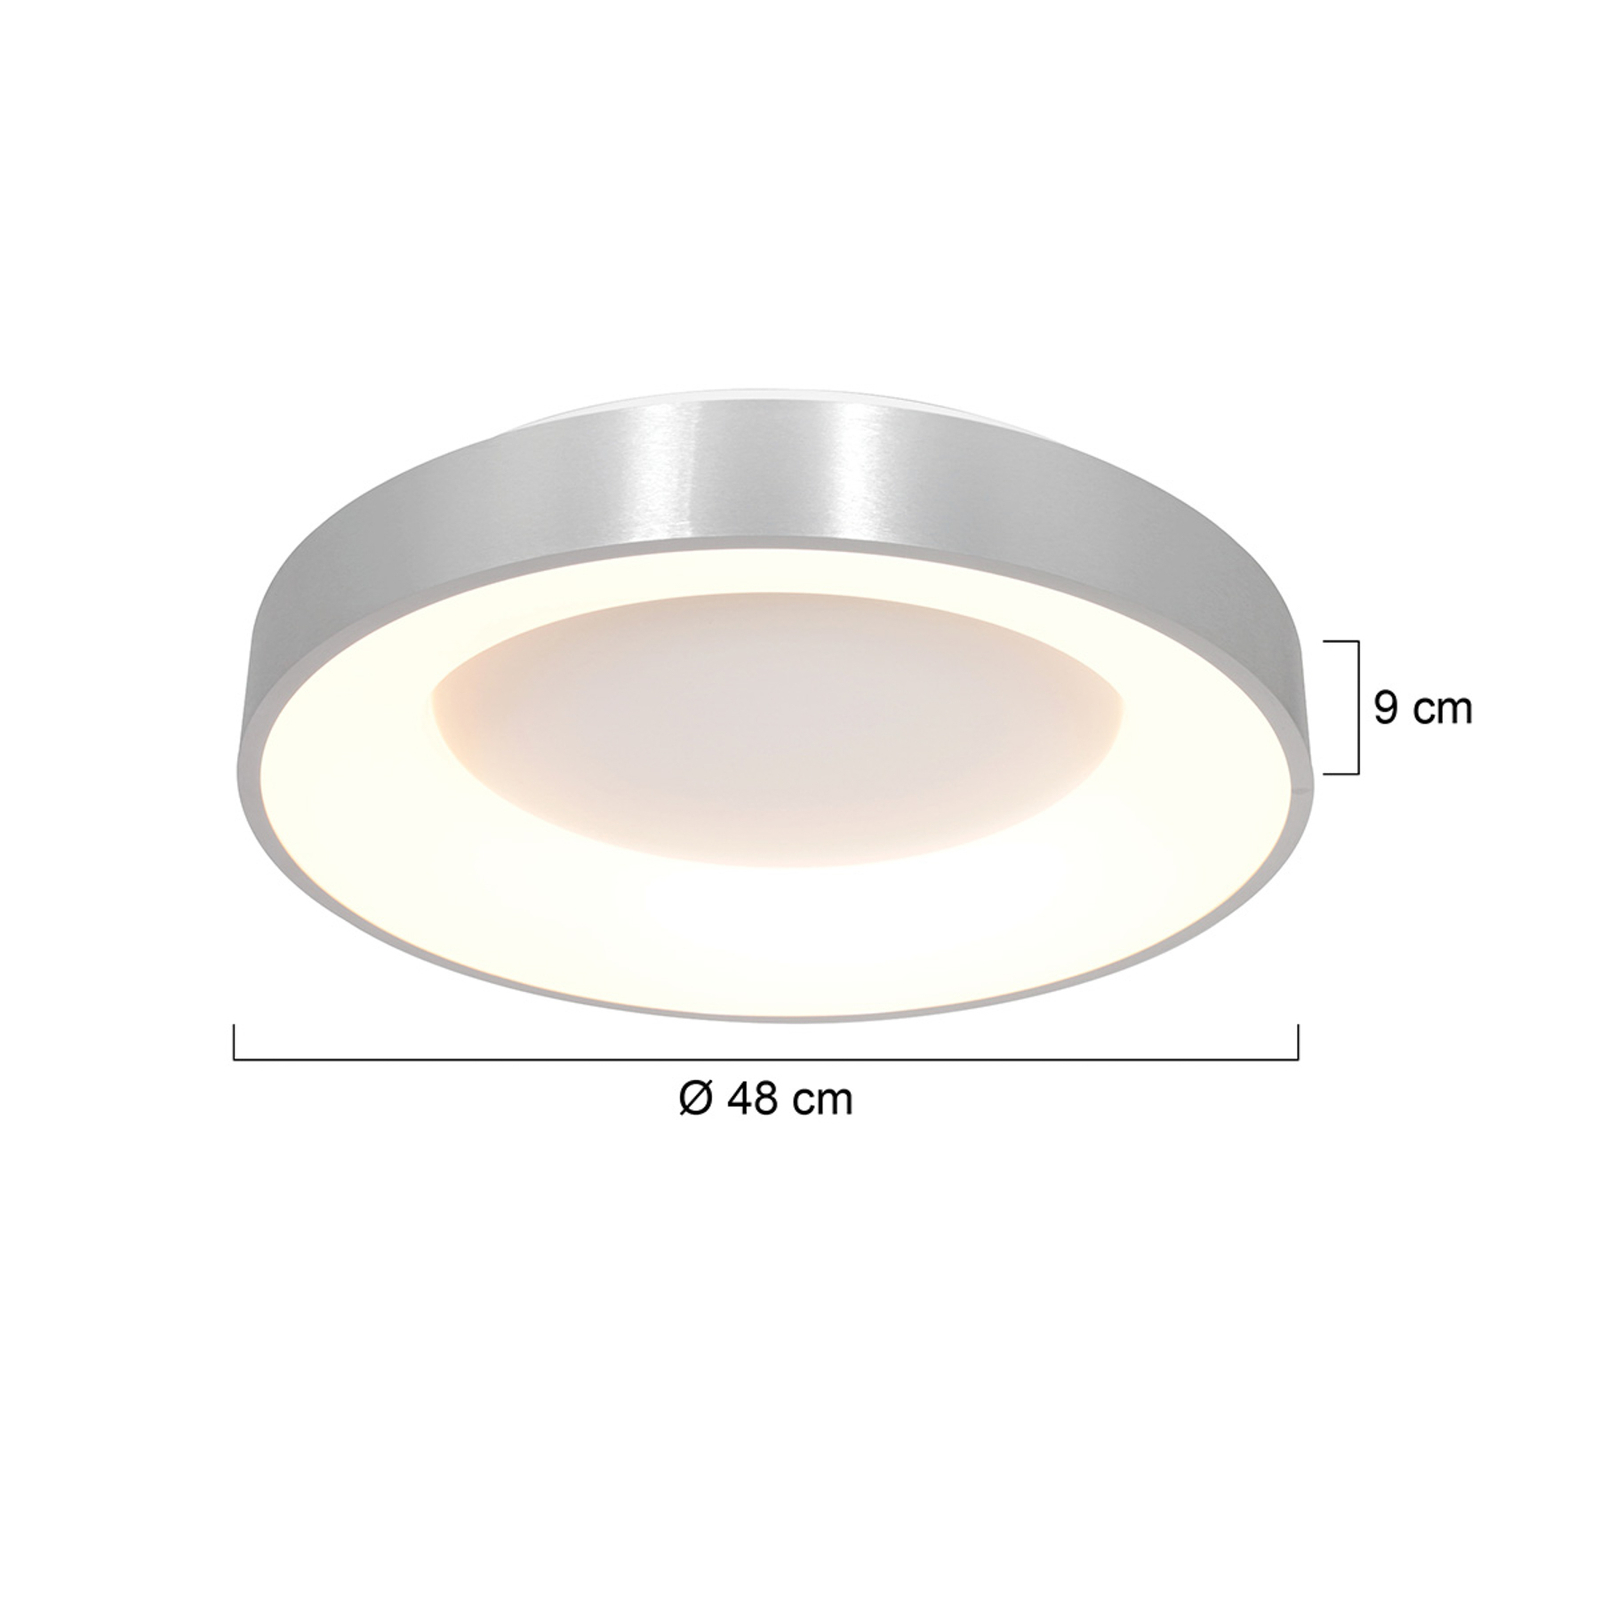 LED ceiling light Ringlede 2,700 K Ø 48 cm silver